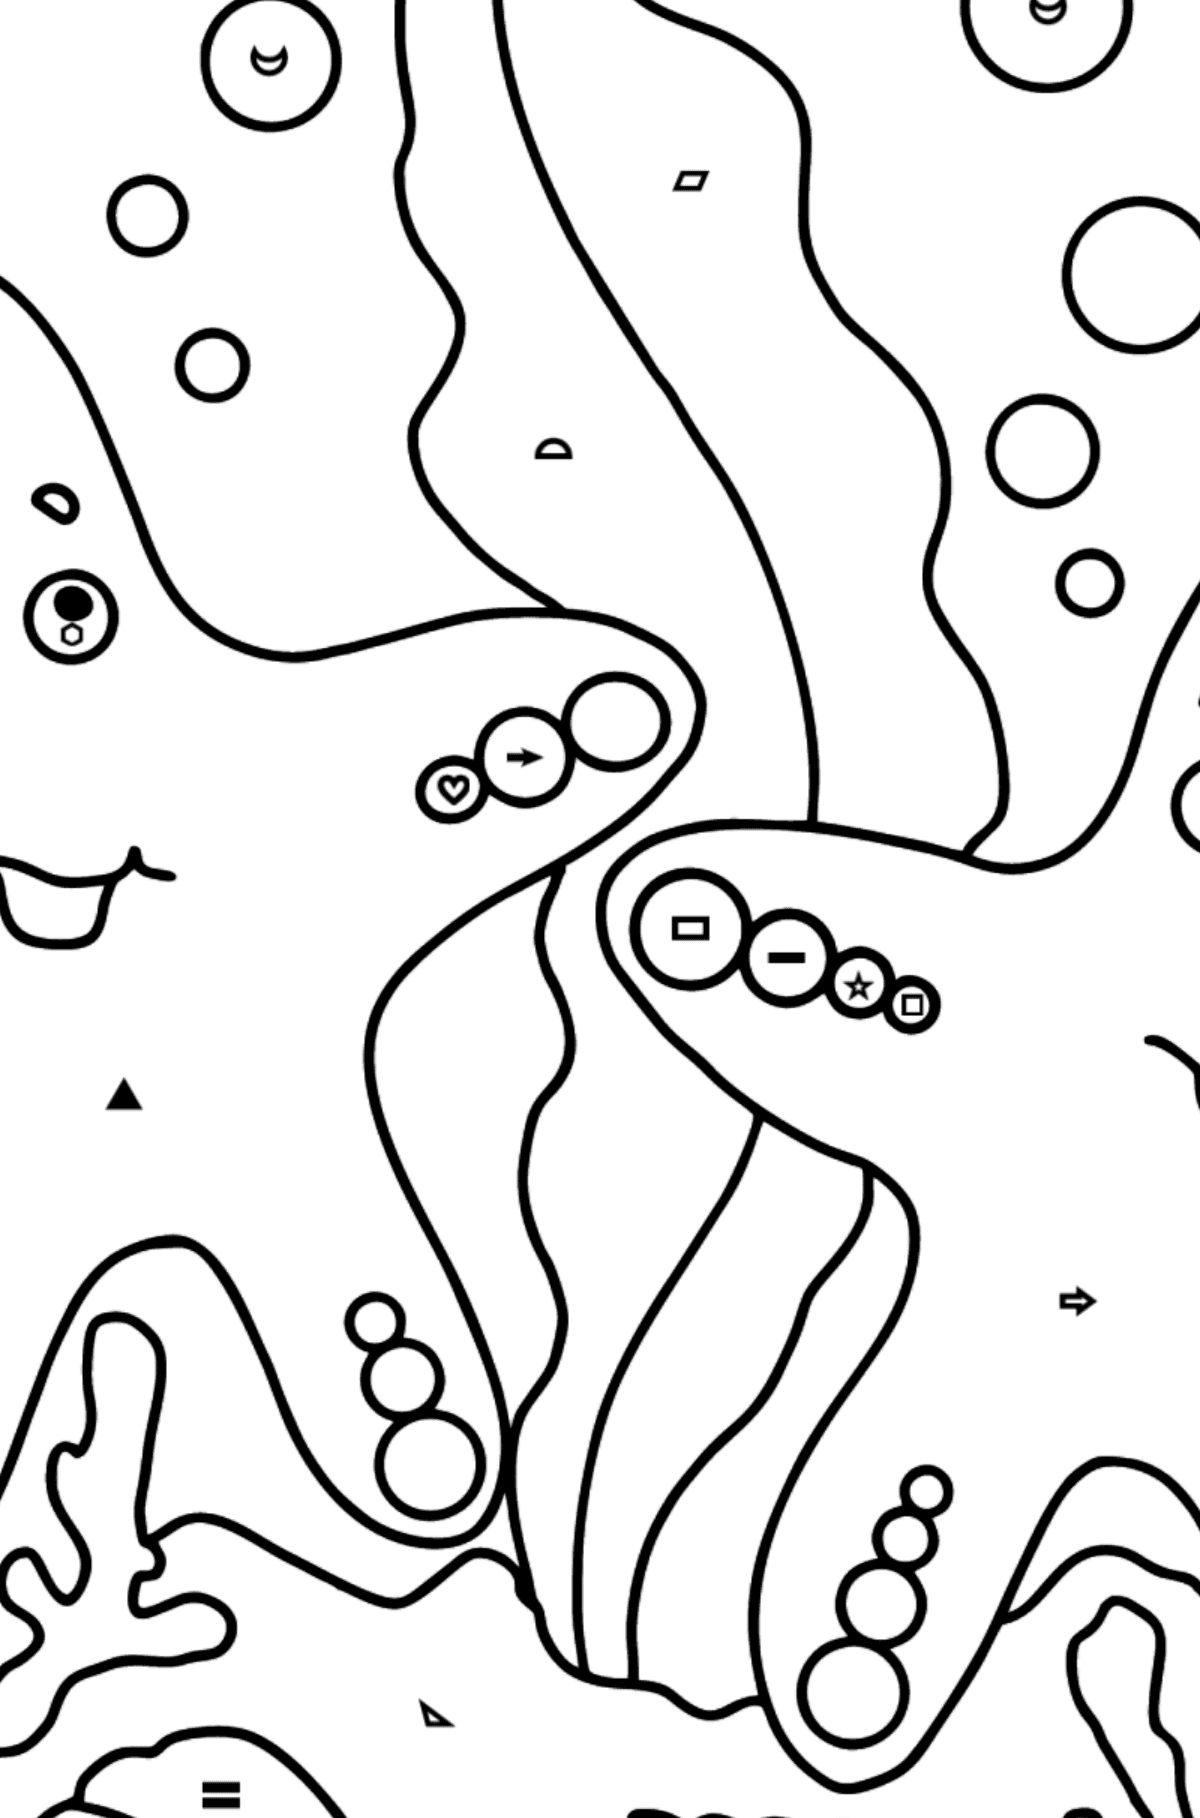 Dibujo para colorear Dos estrellas de mar - Colorear por Símbolos para Niños